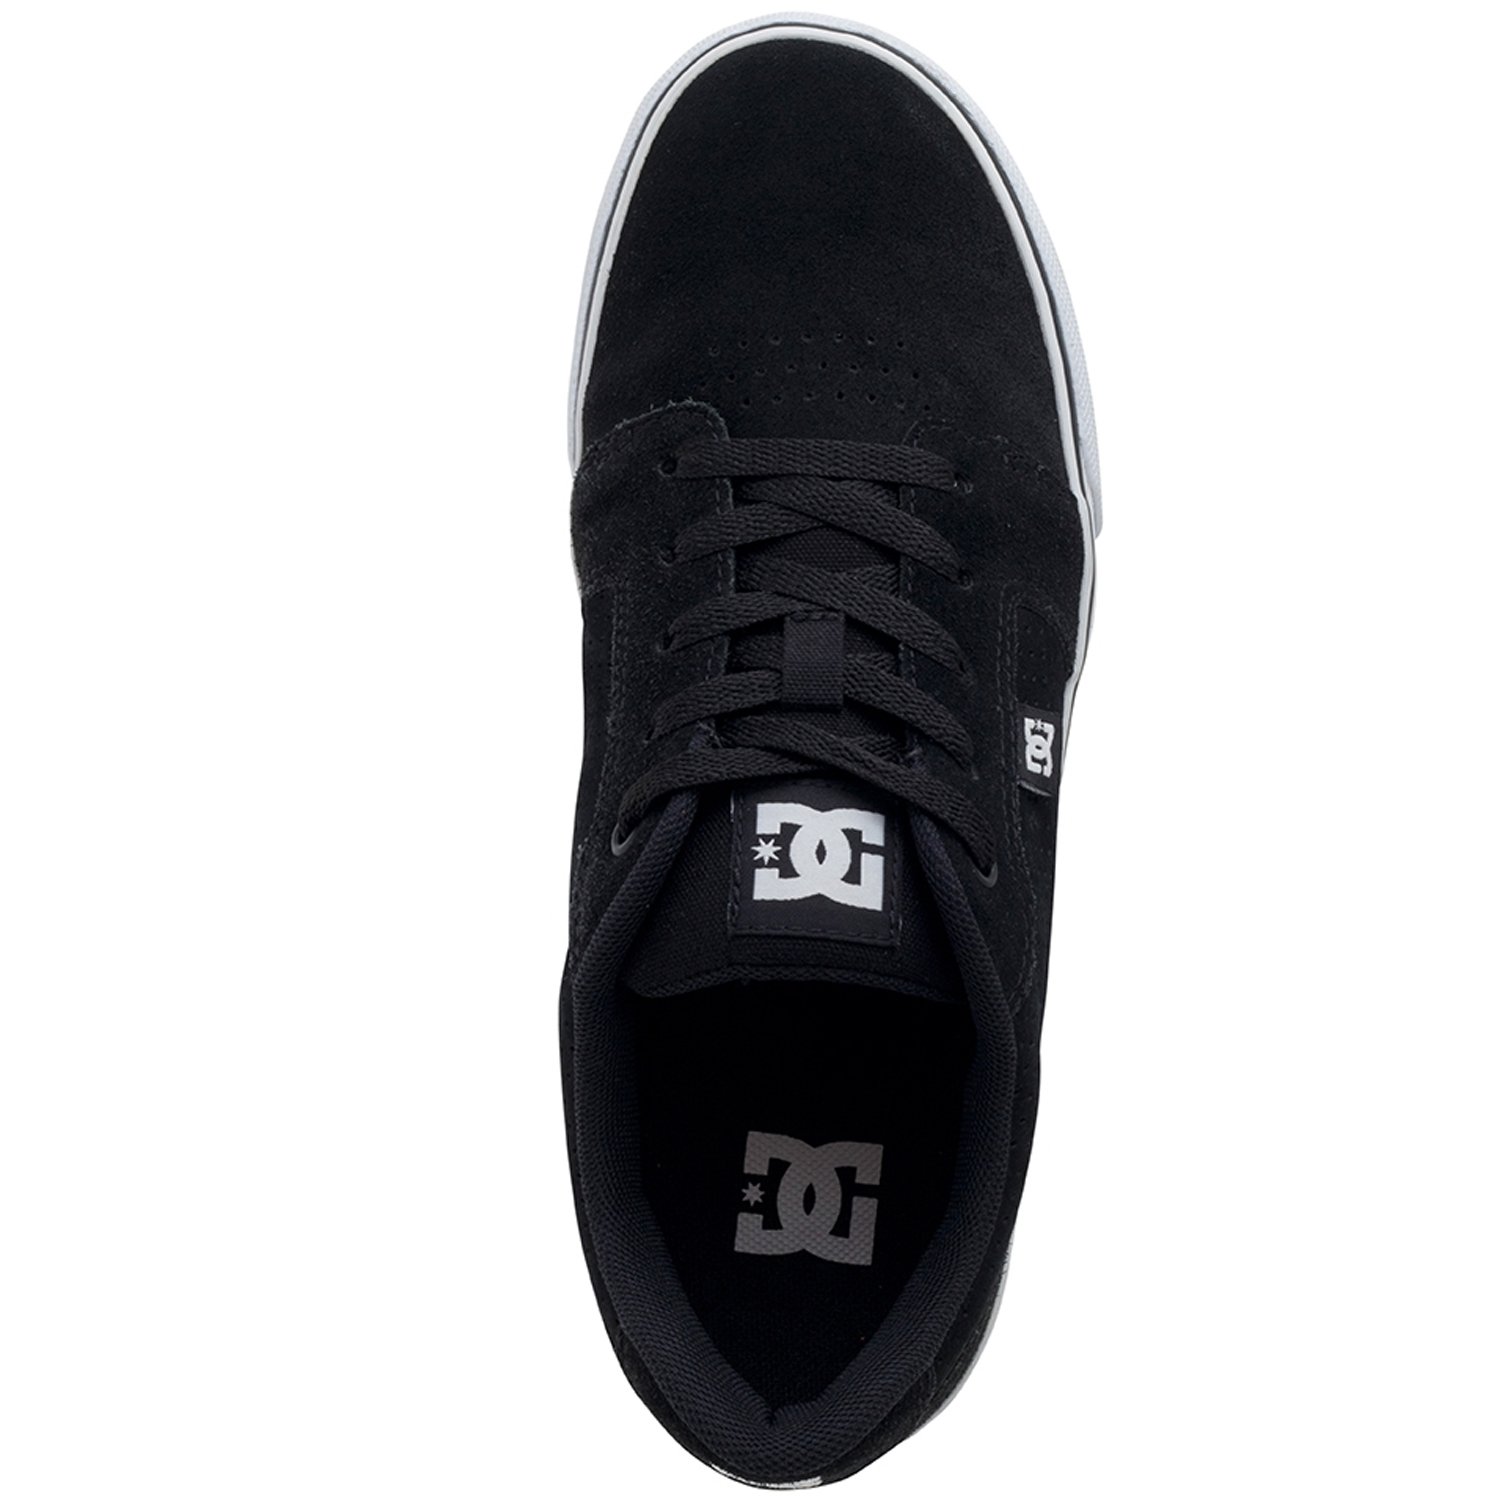 Tênis DC Shoes Anvil LA SE Masculino - Preto e Branco Preto 3